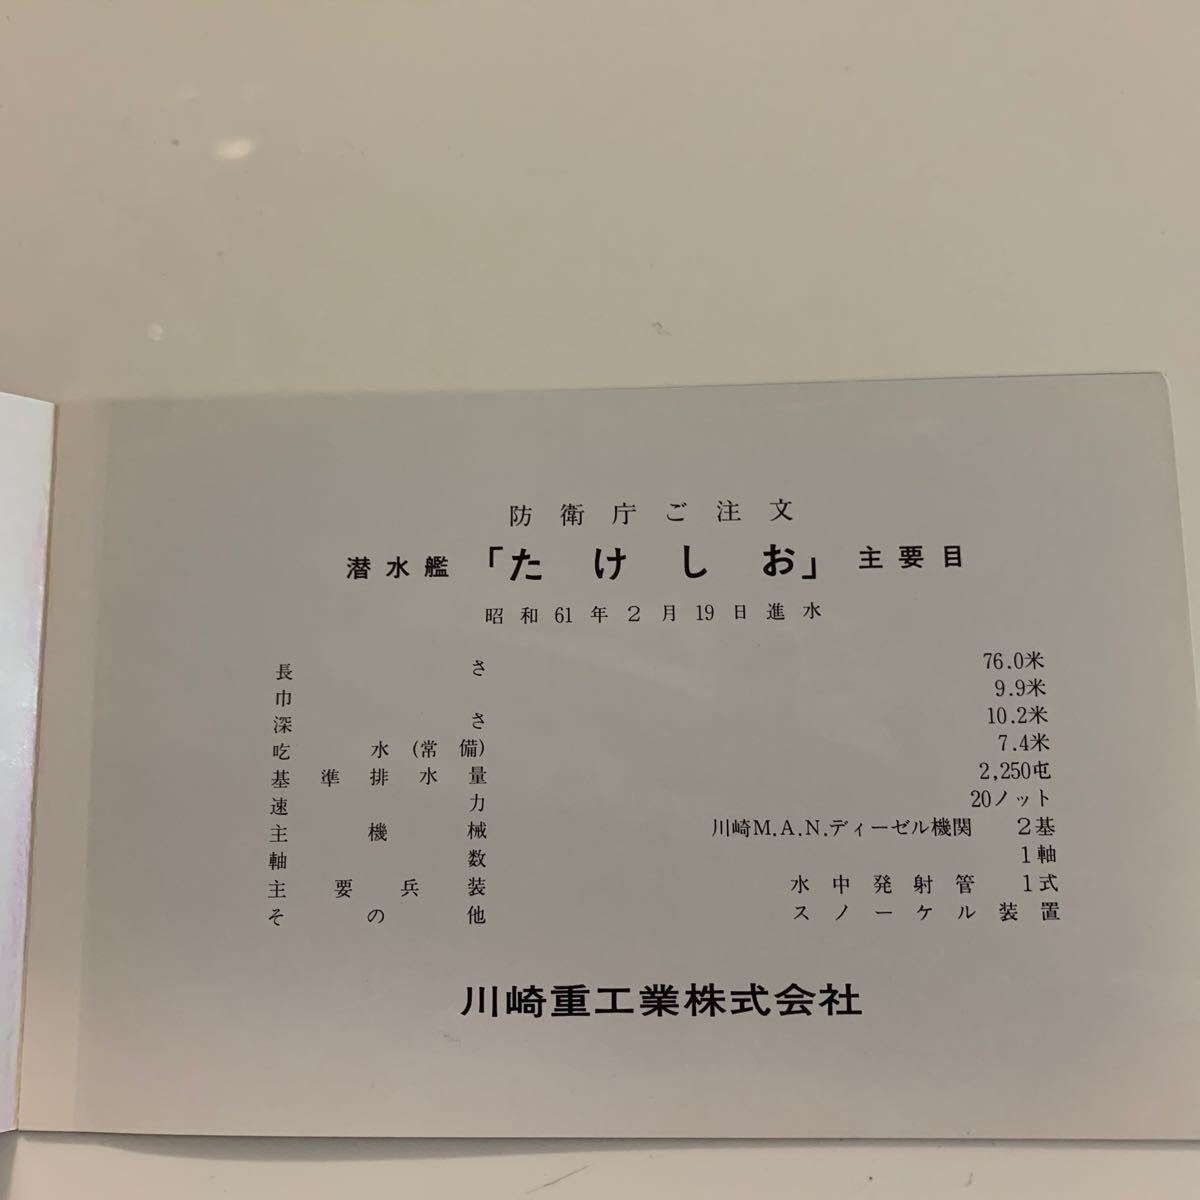 船舶絵葉書 進水記念 防衛庁 潜水艦 たけしおの画像2